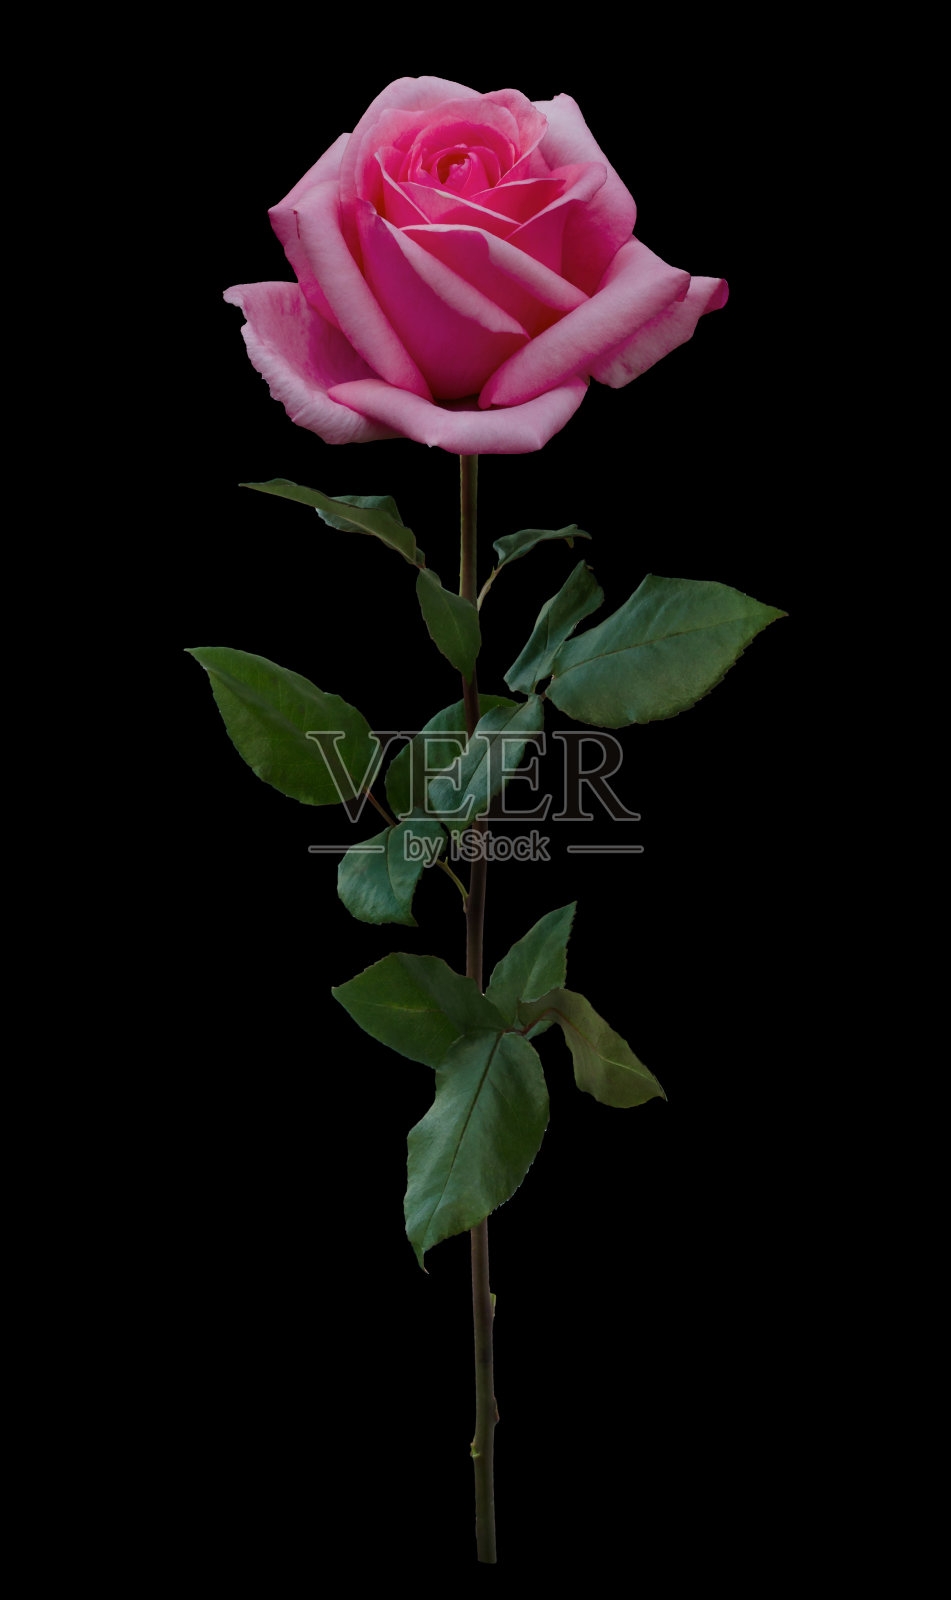 粉红色的玫瑰长着绿色的叶子照片摄影图片